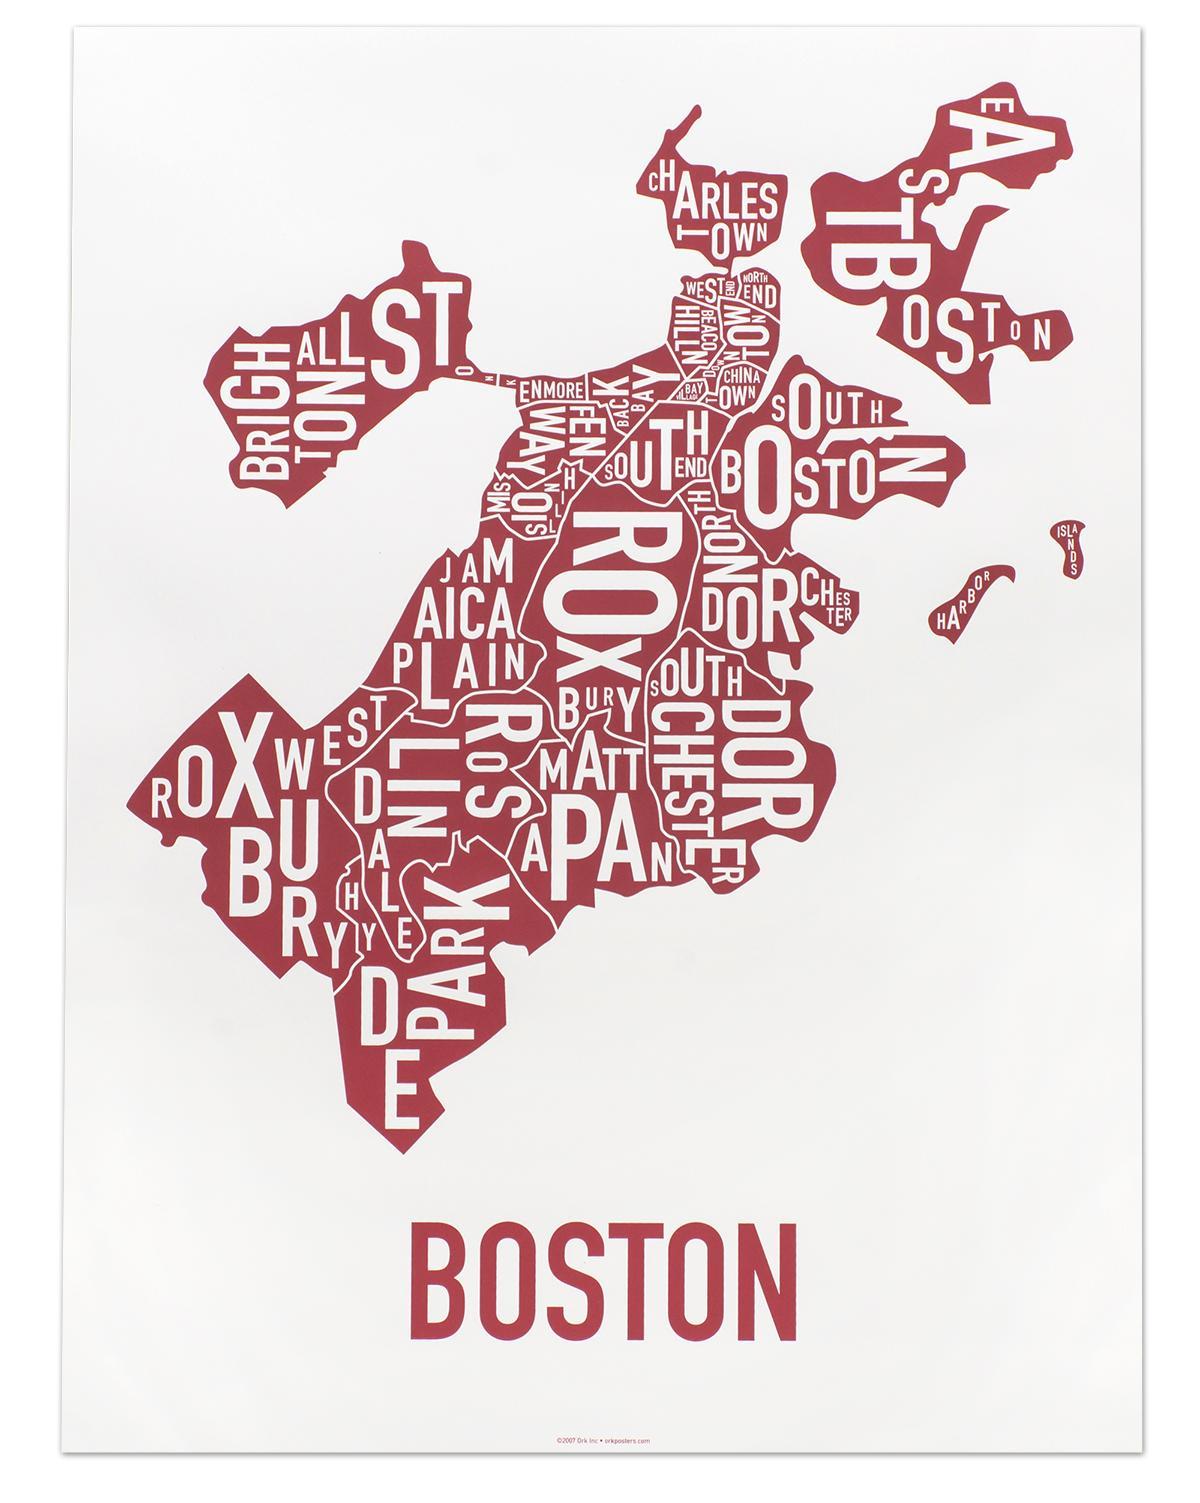 เมืองของแผนที่บอสตัน